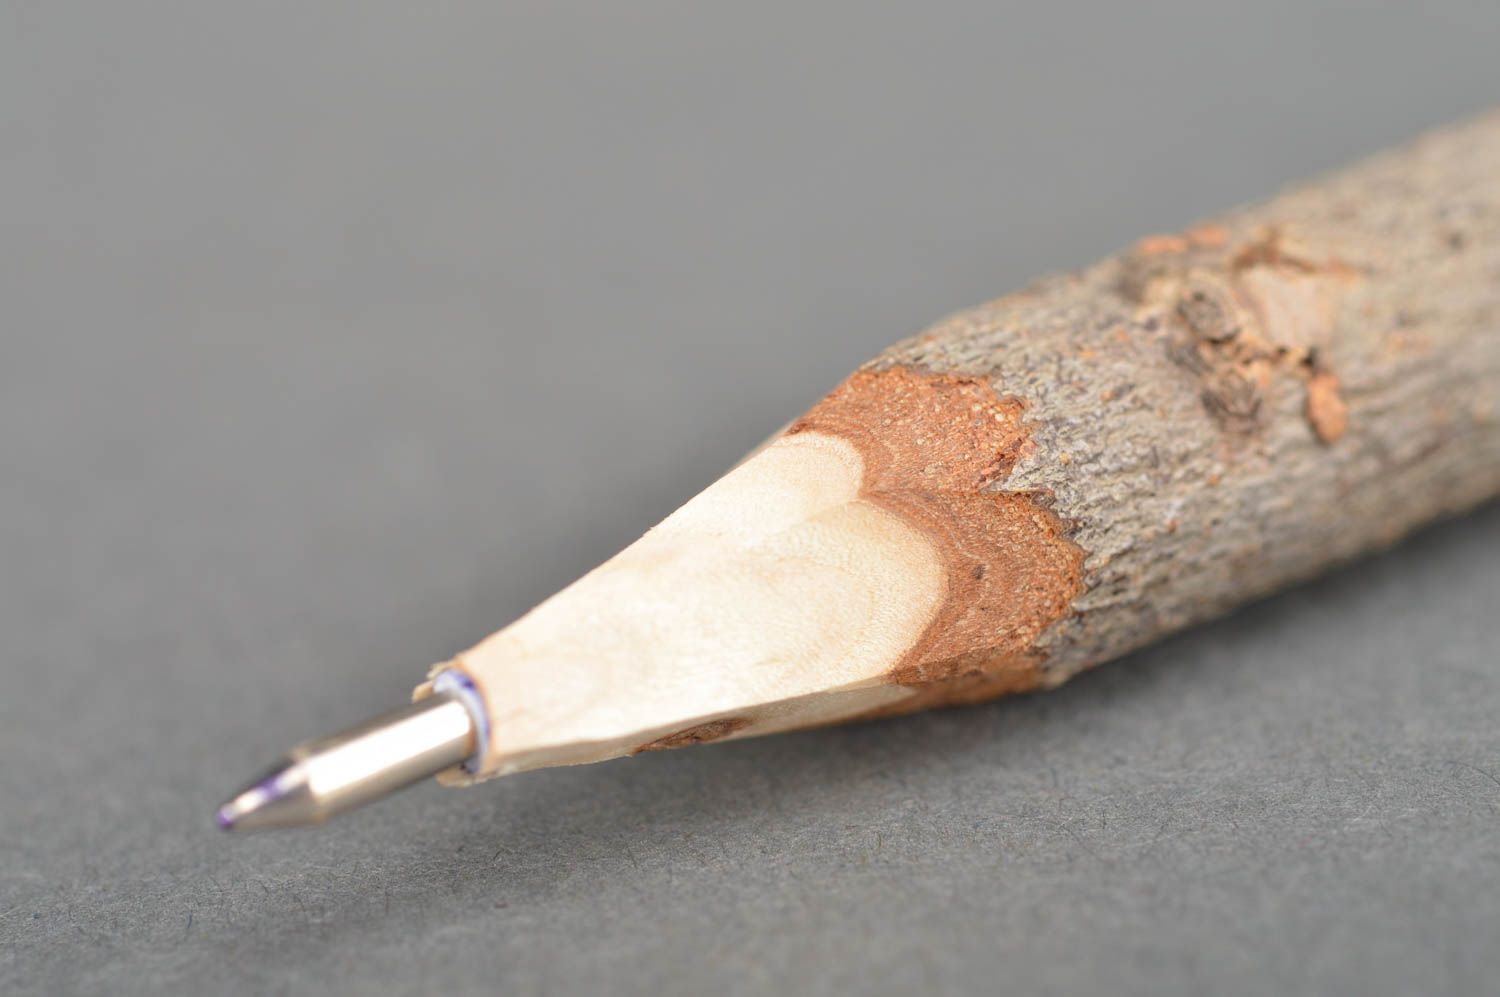 Авторская ручка ручной работы в эко стиле из натуральных материалов подарок фото 2